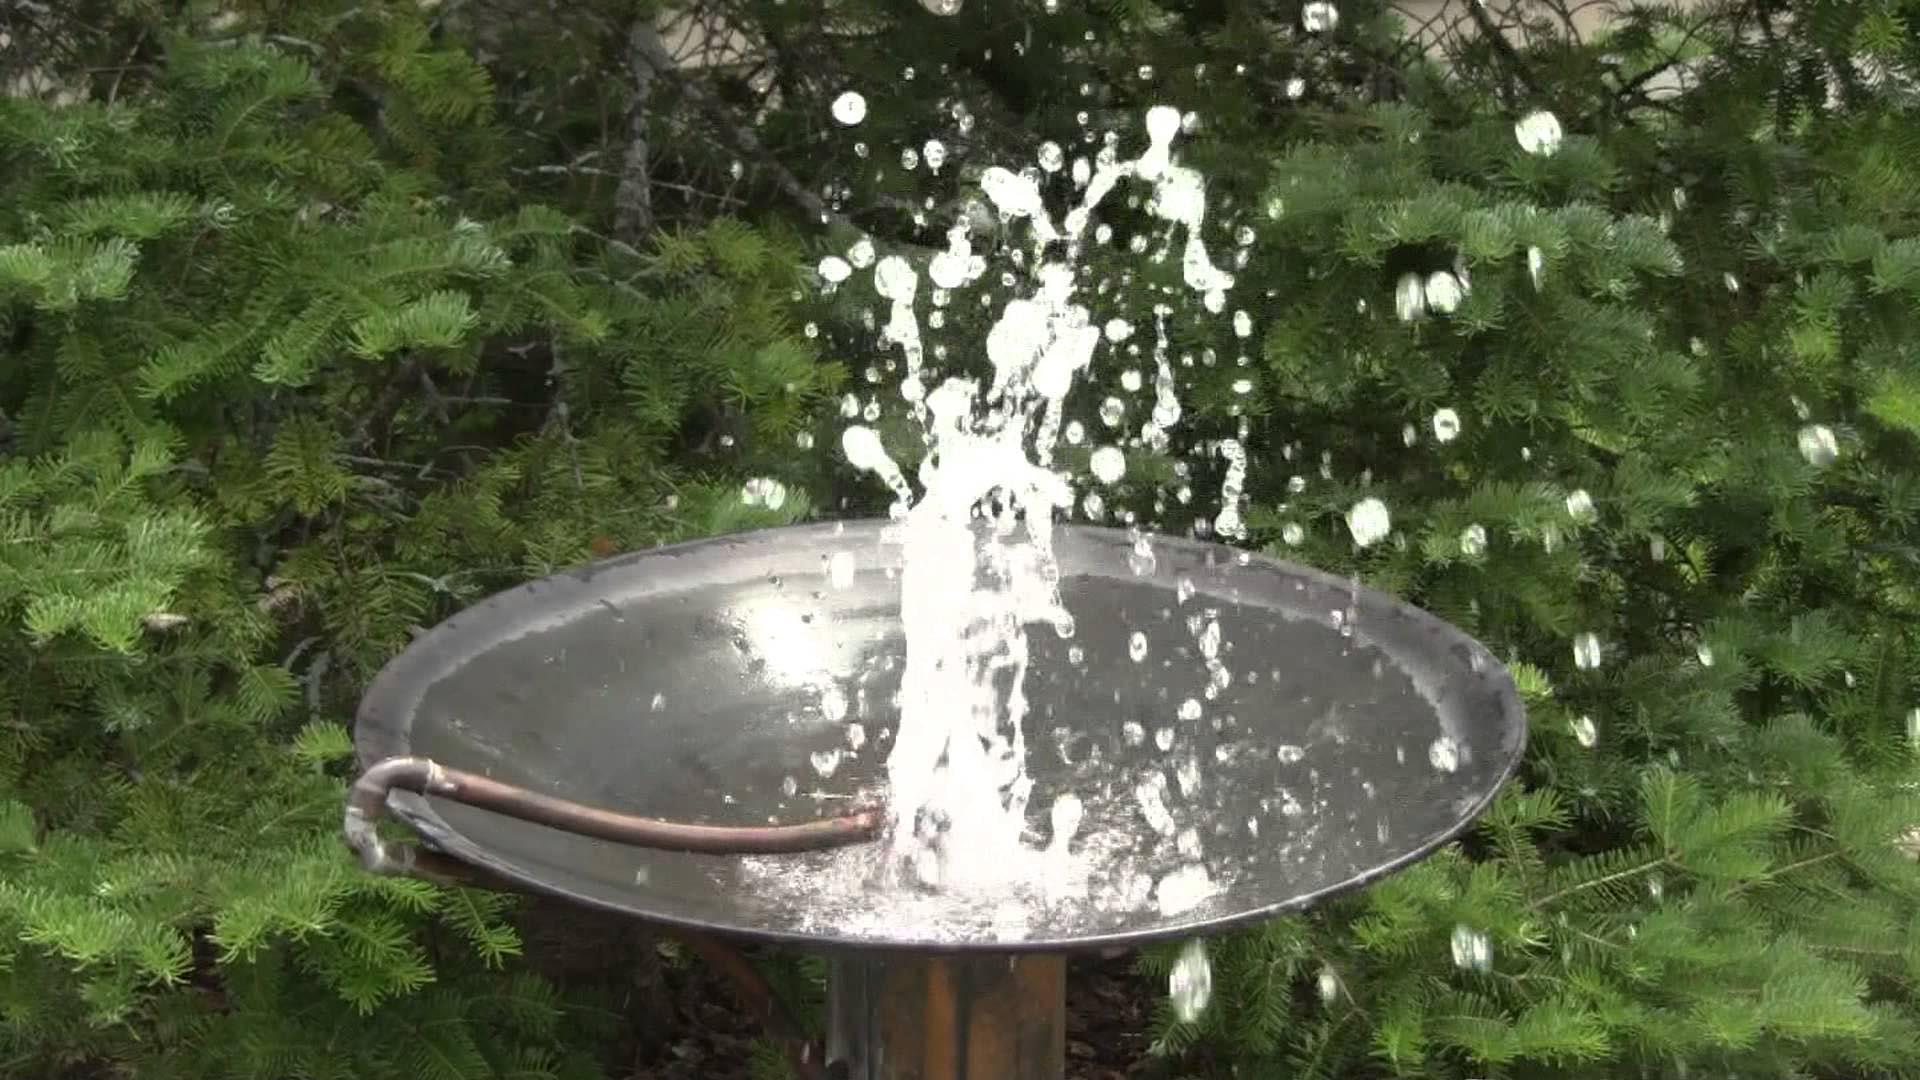 DIY Water Fountain Bird Bath